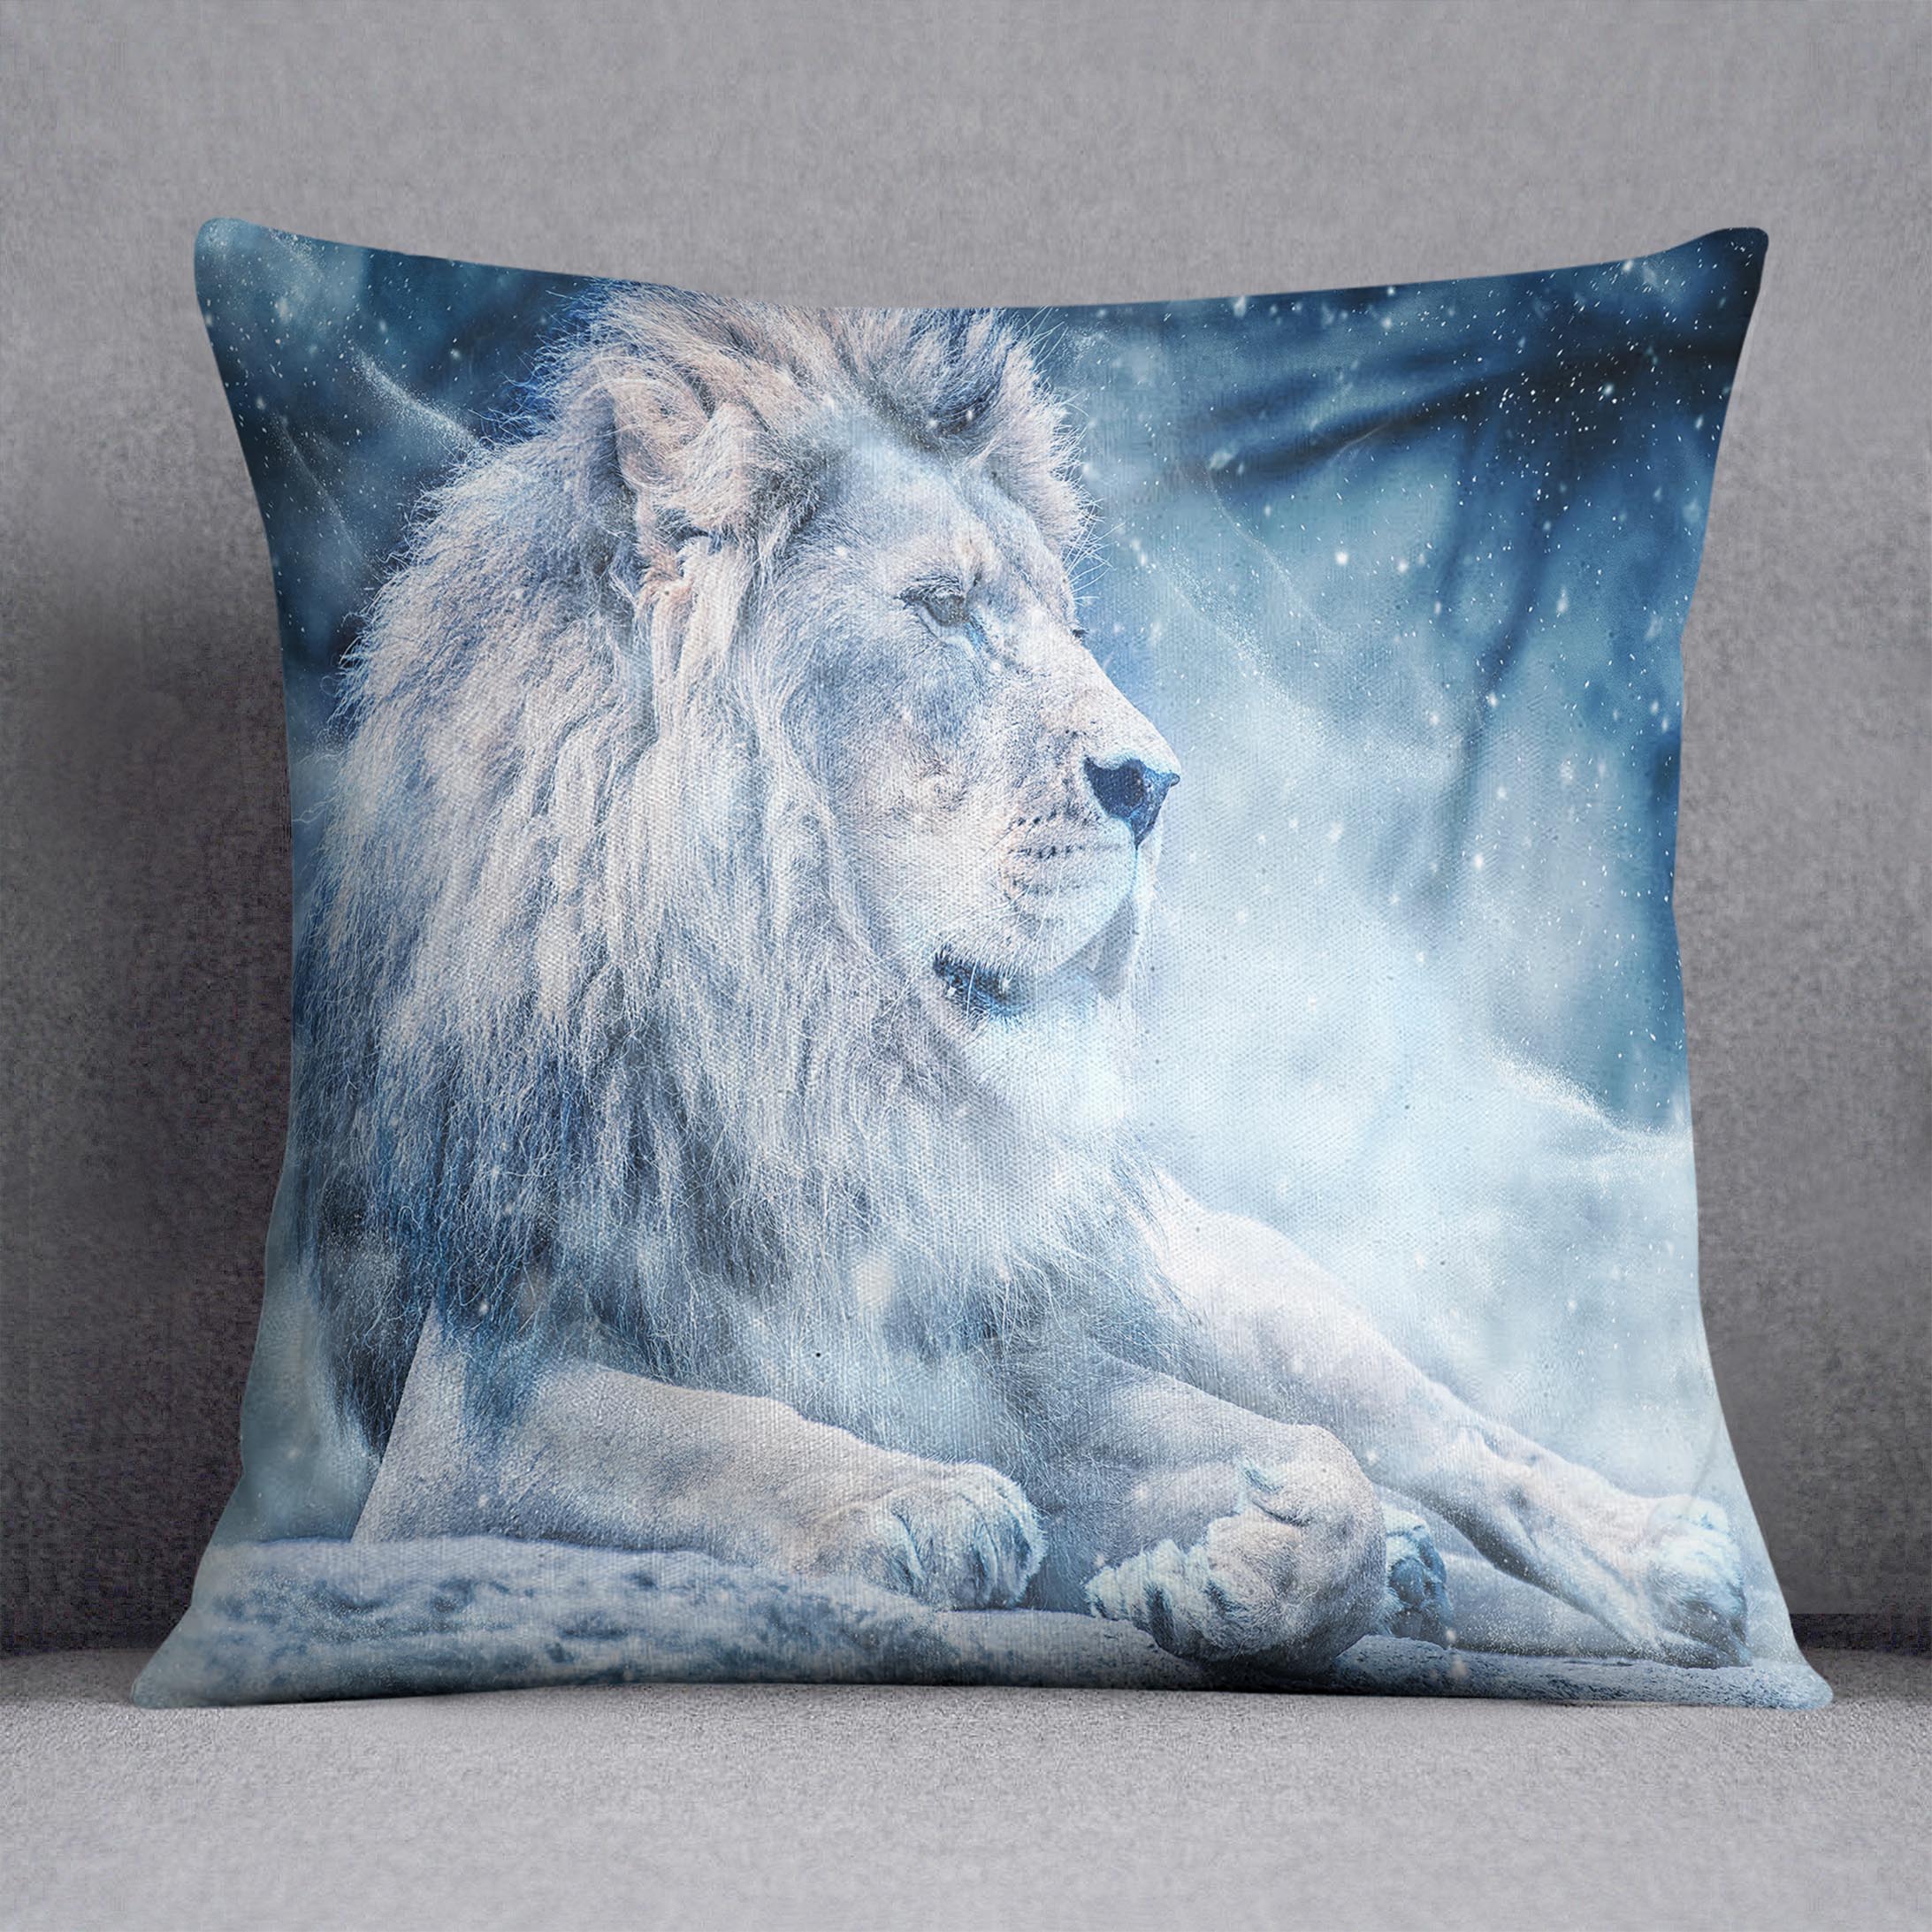 The White Lion Cushion